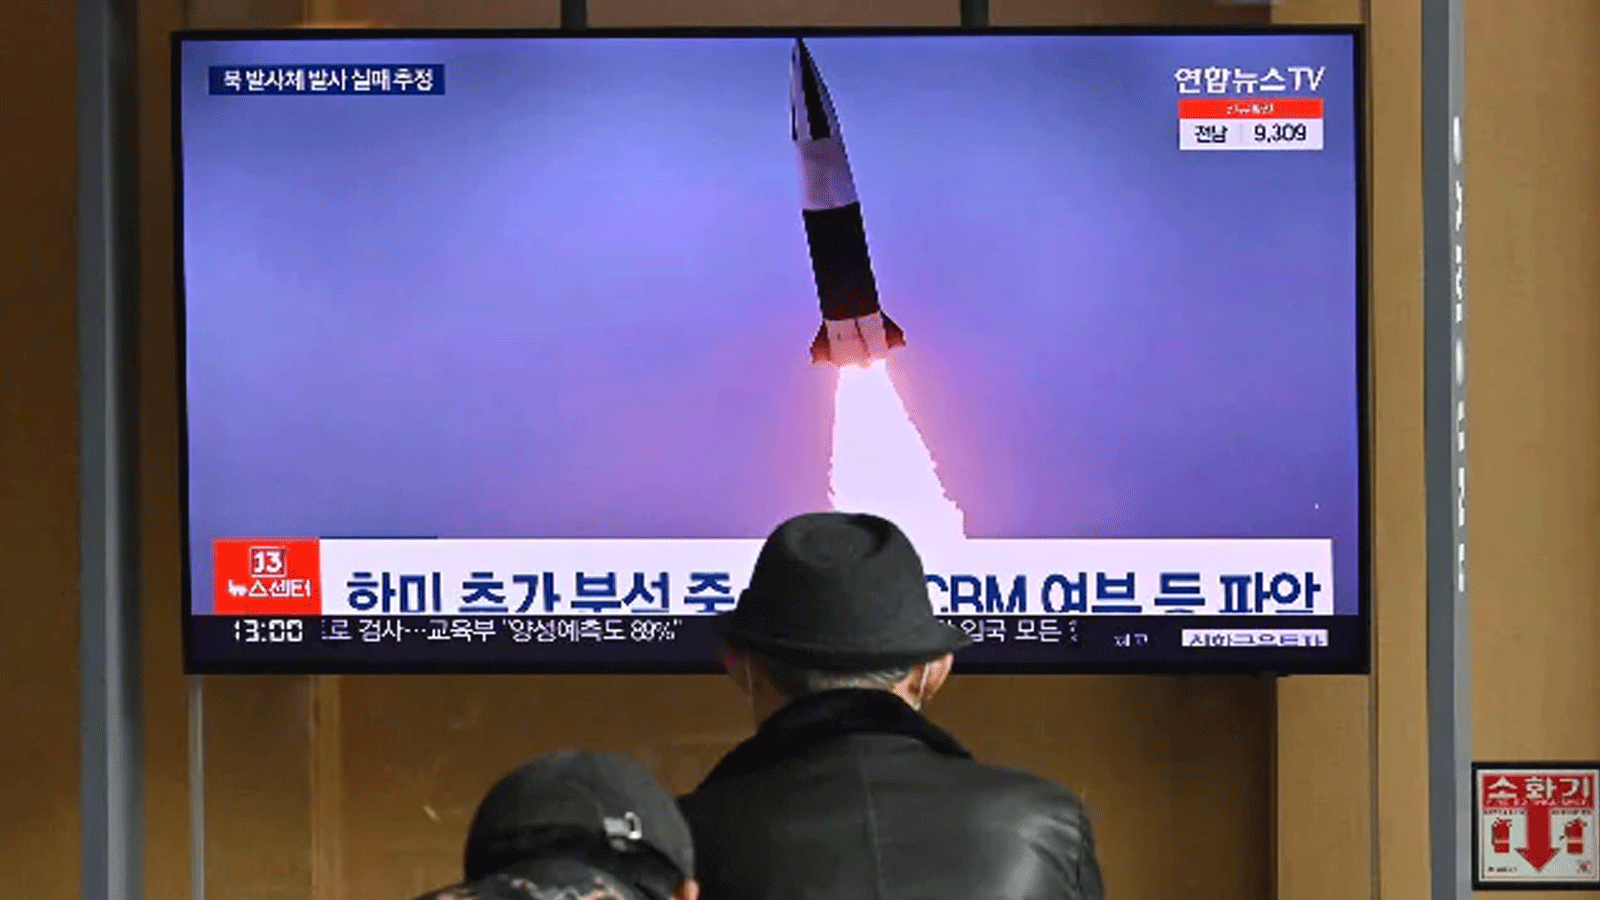 كوريا الشمالية تطلق صاروخا بالستيا طويل المدى